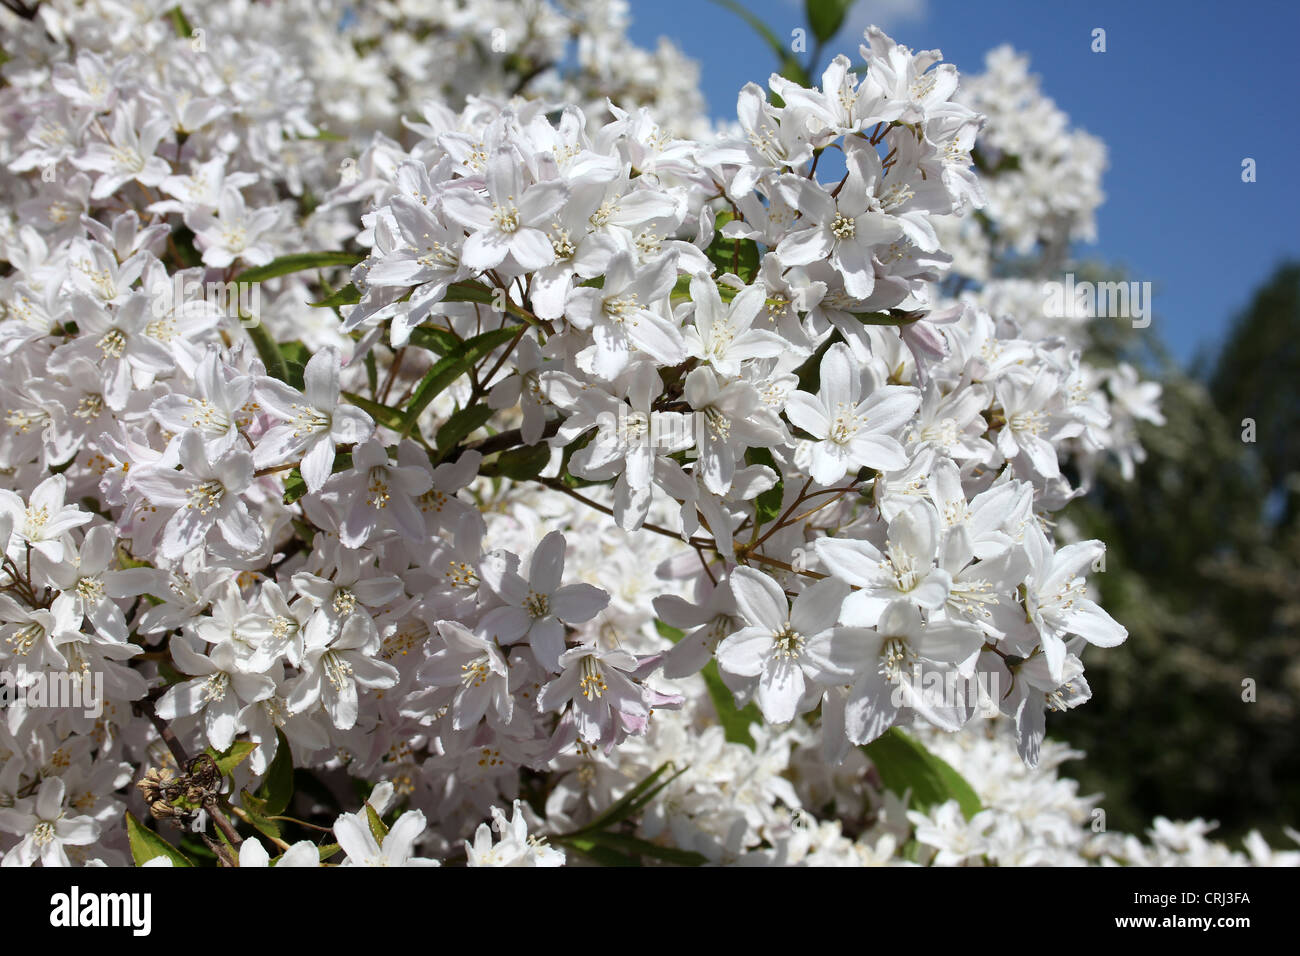 White Flowering Deutzia Shrub Stock Photo